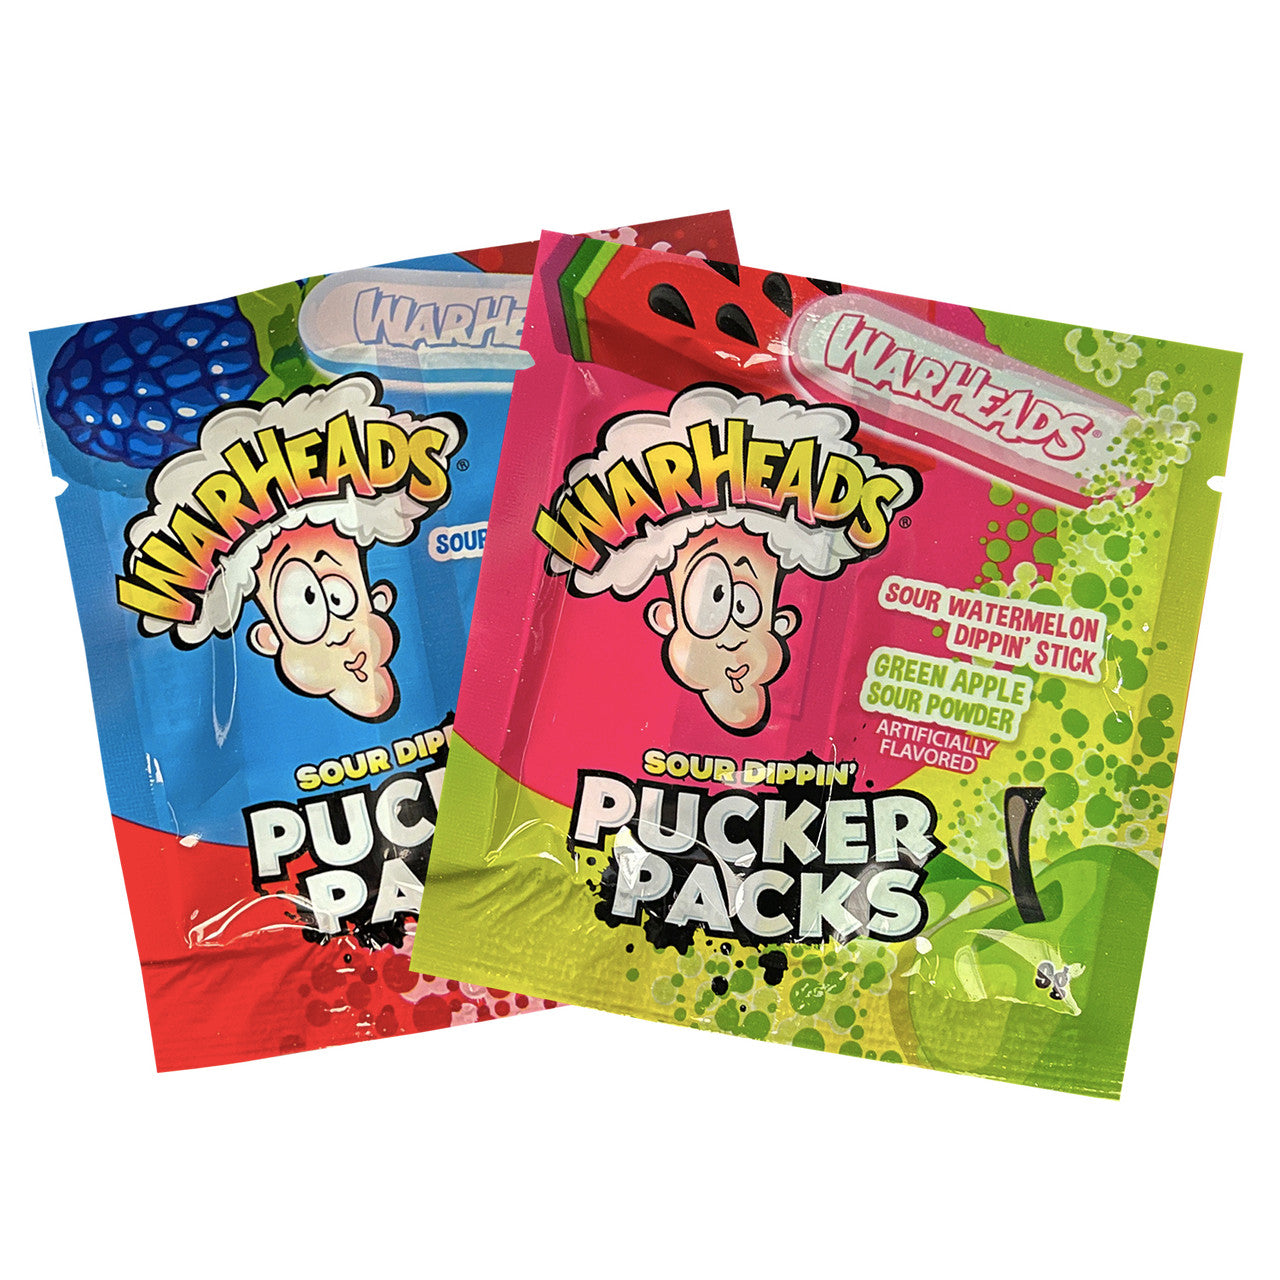 Warheads Pucker Packs